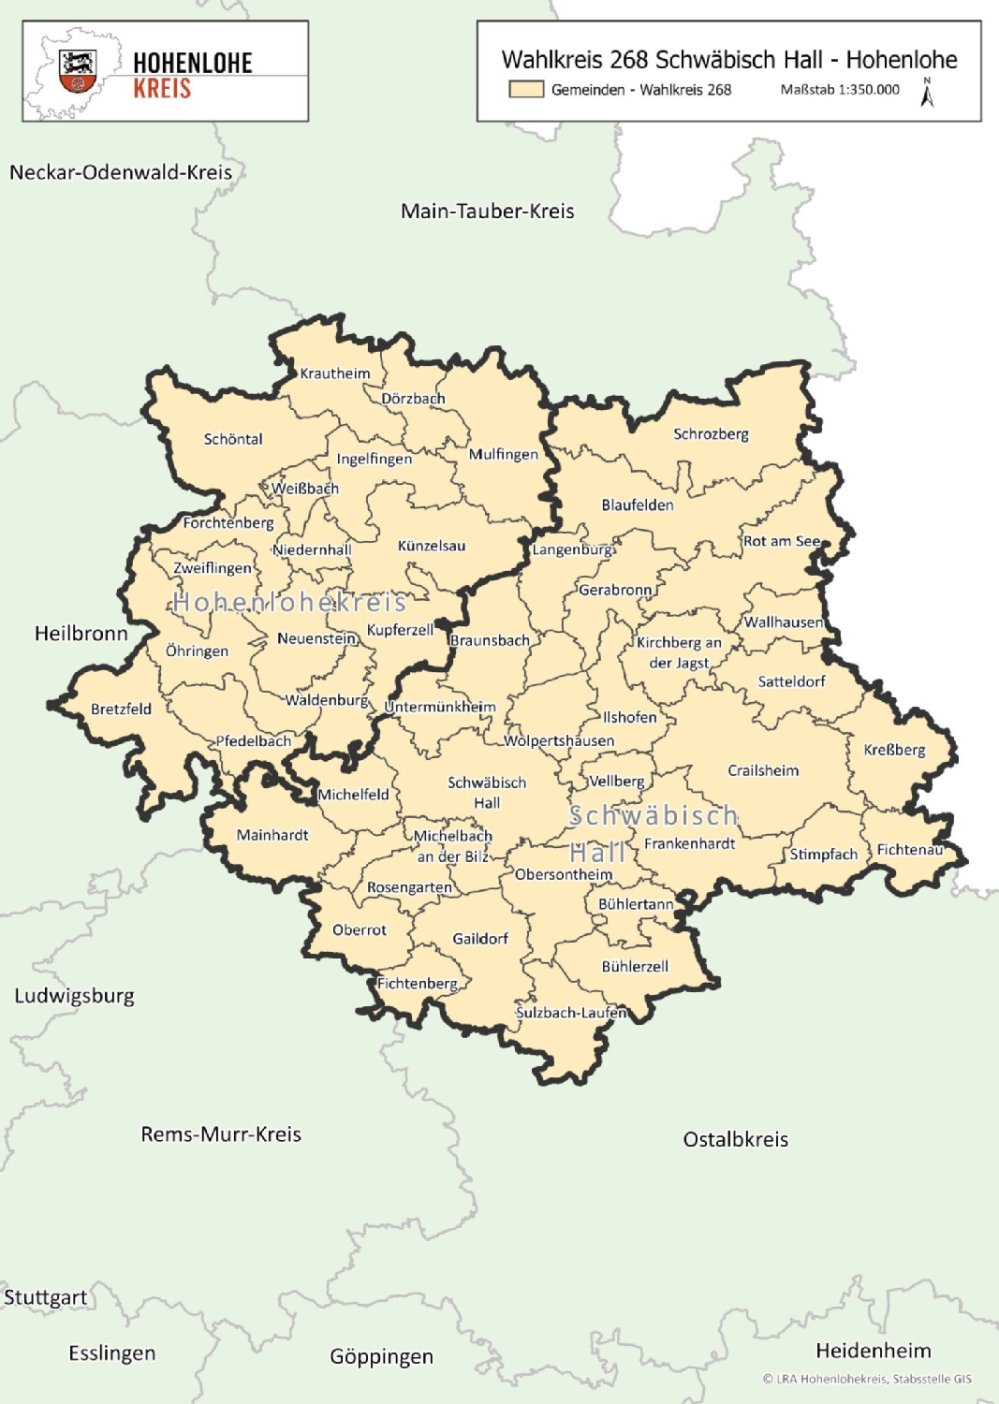 Landkarte mit Einteilung der Wahlkreise für die Bundestagswahl